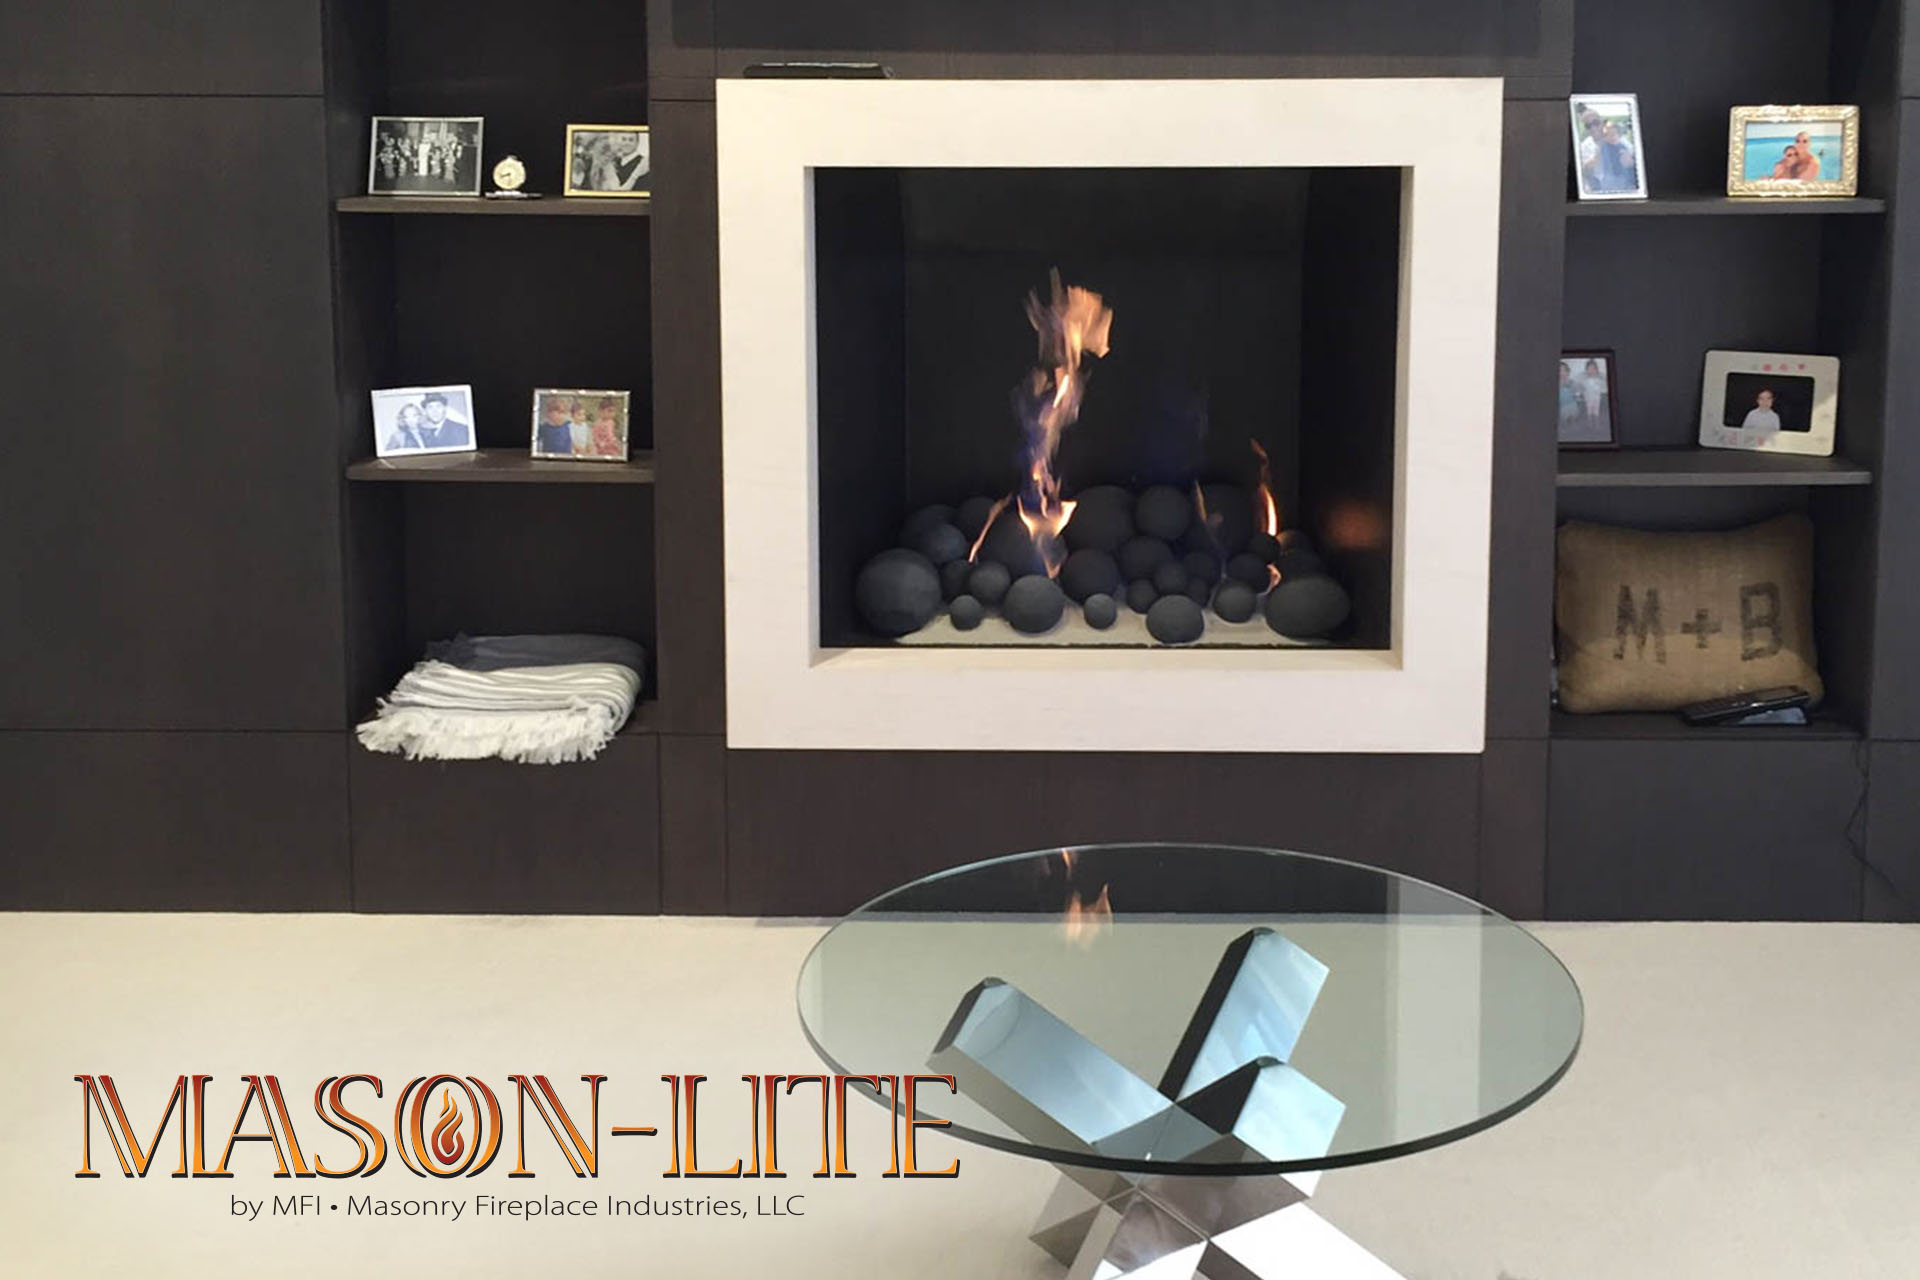 Mason-Lite fireplace systems